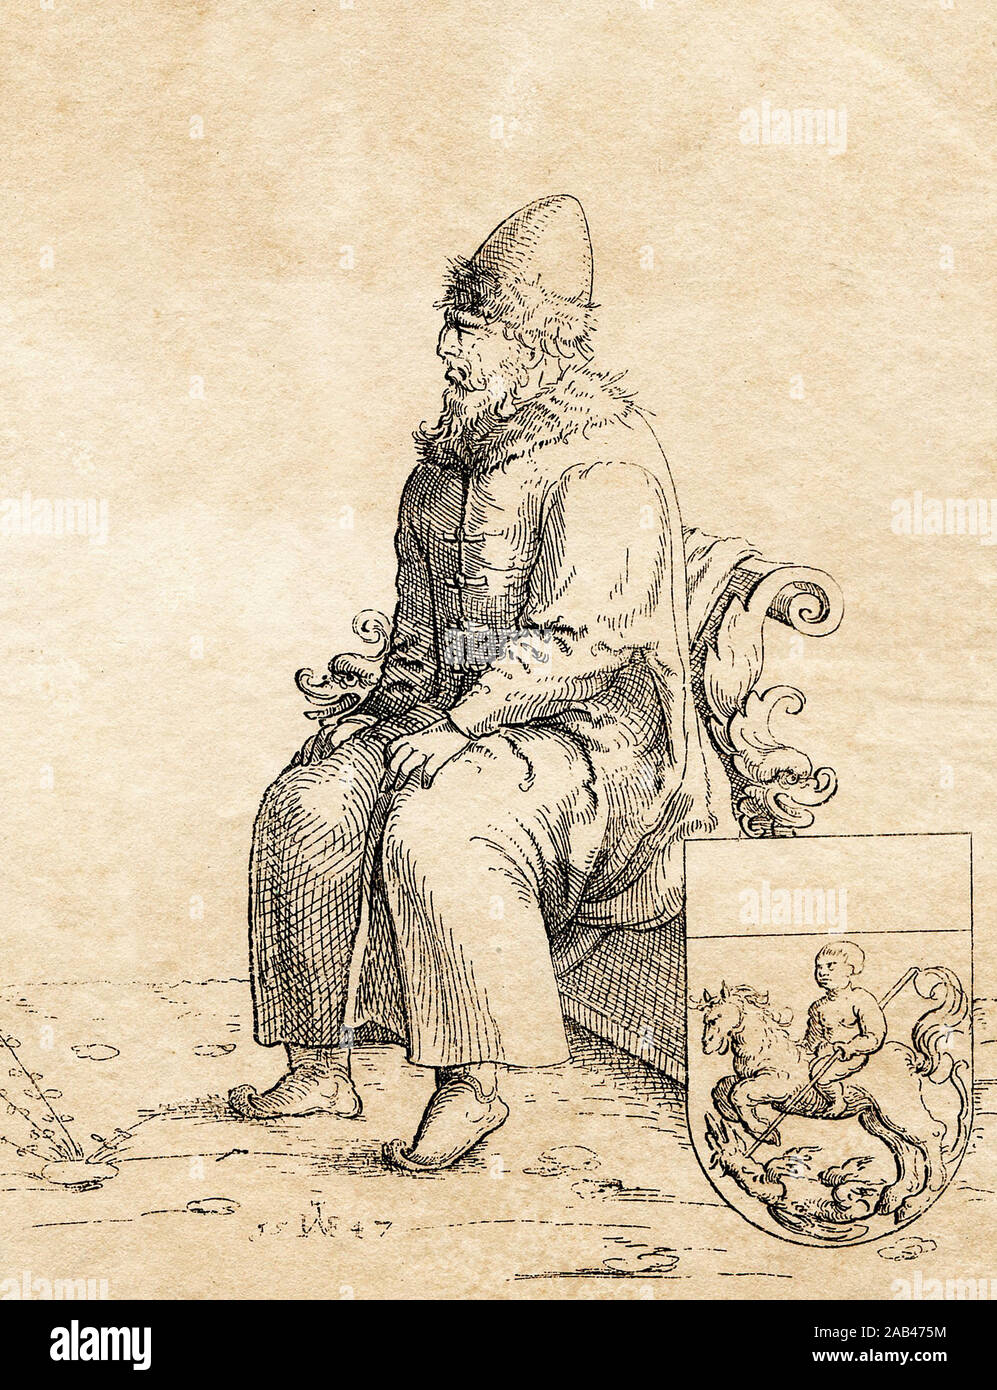 Ritratto dello zar russo Vasily III (Vassili III Ivanovich). Incisione medievale. Foto Stock